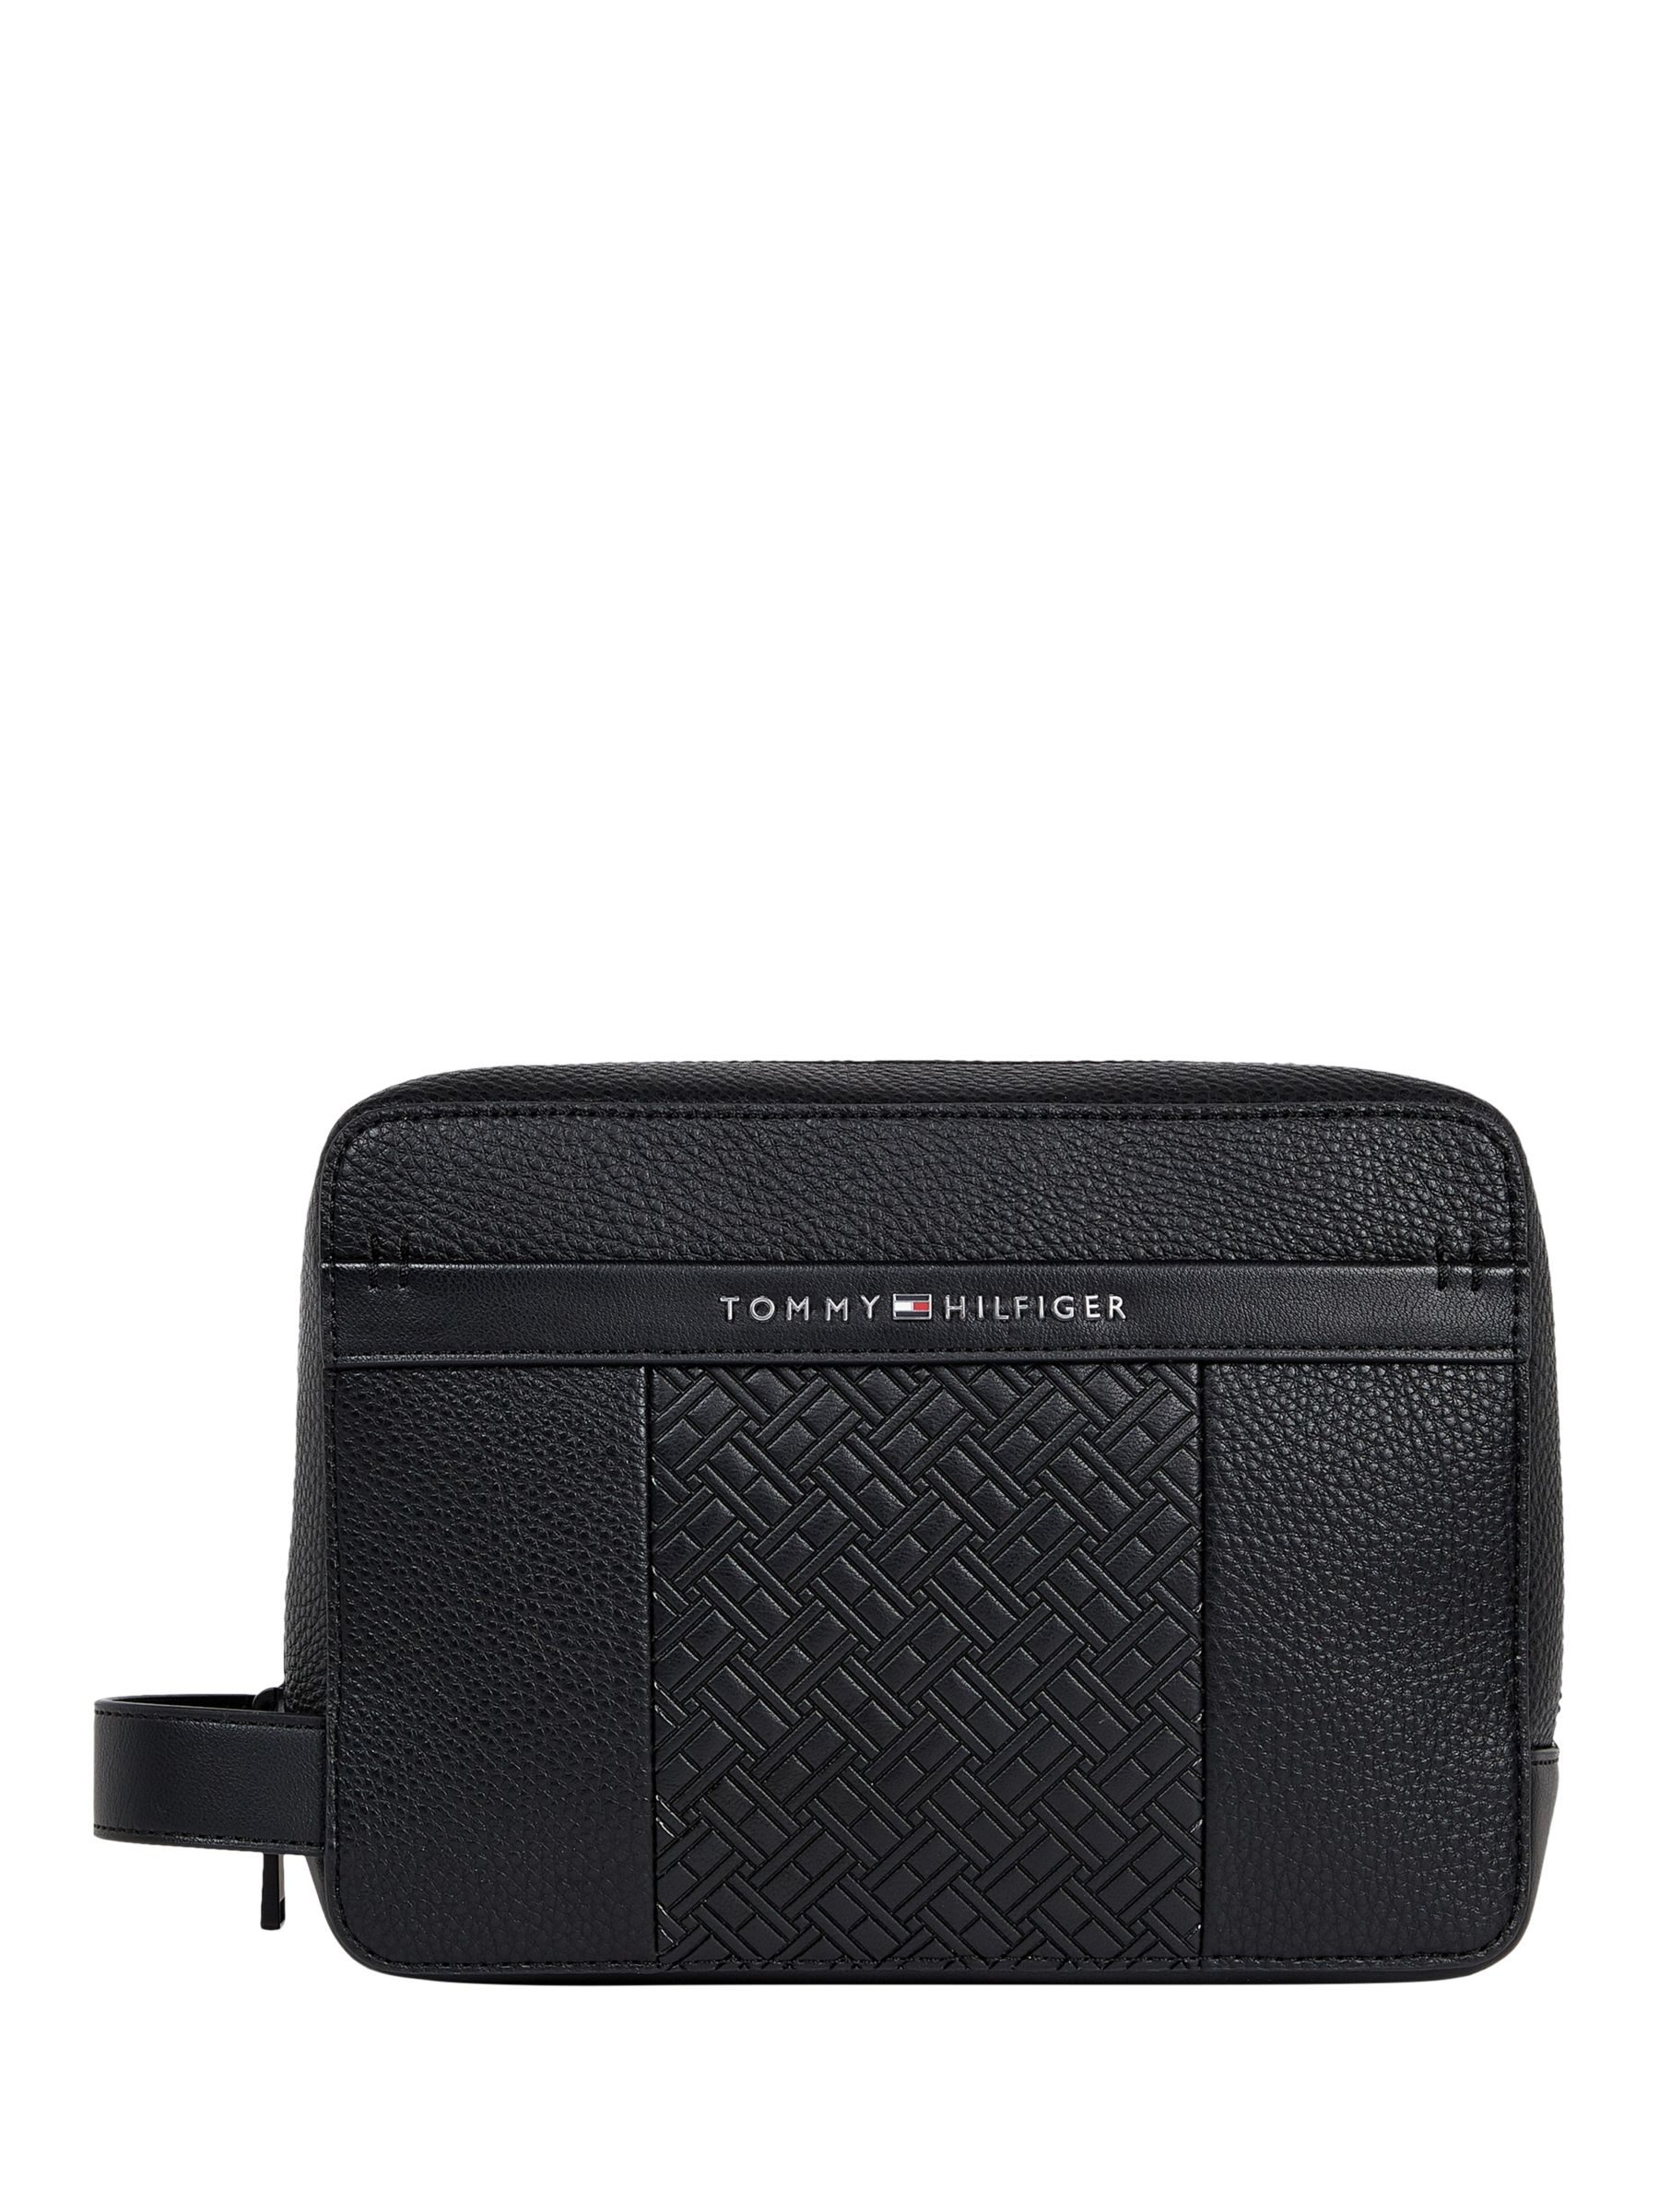 Tommy Hilfiger Central Wash Bag, Black at John Lewis & Partners